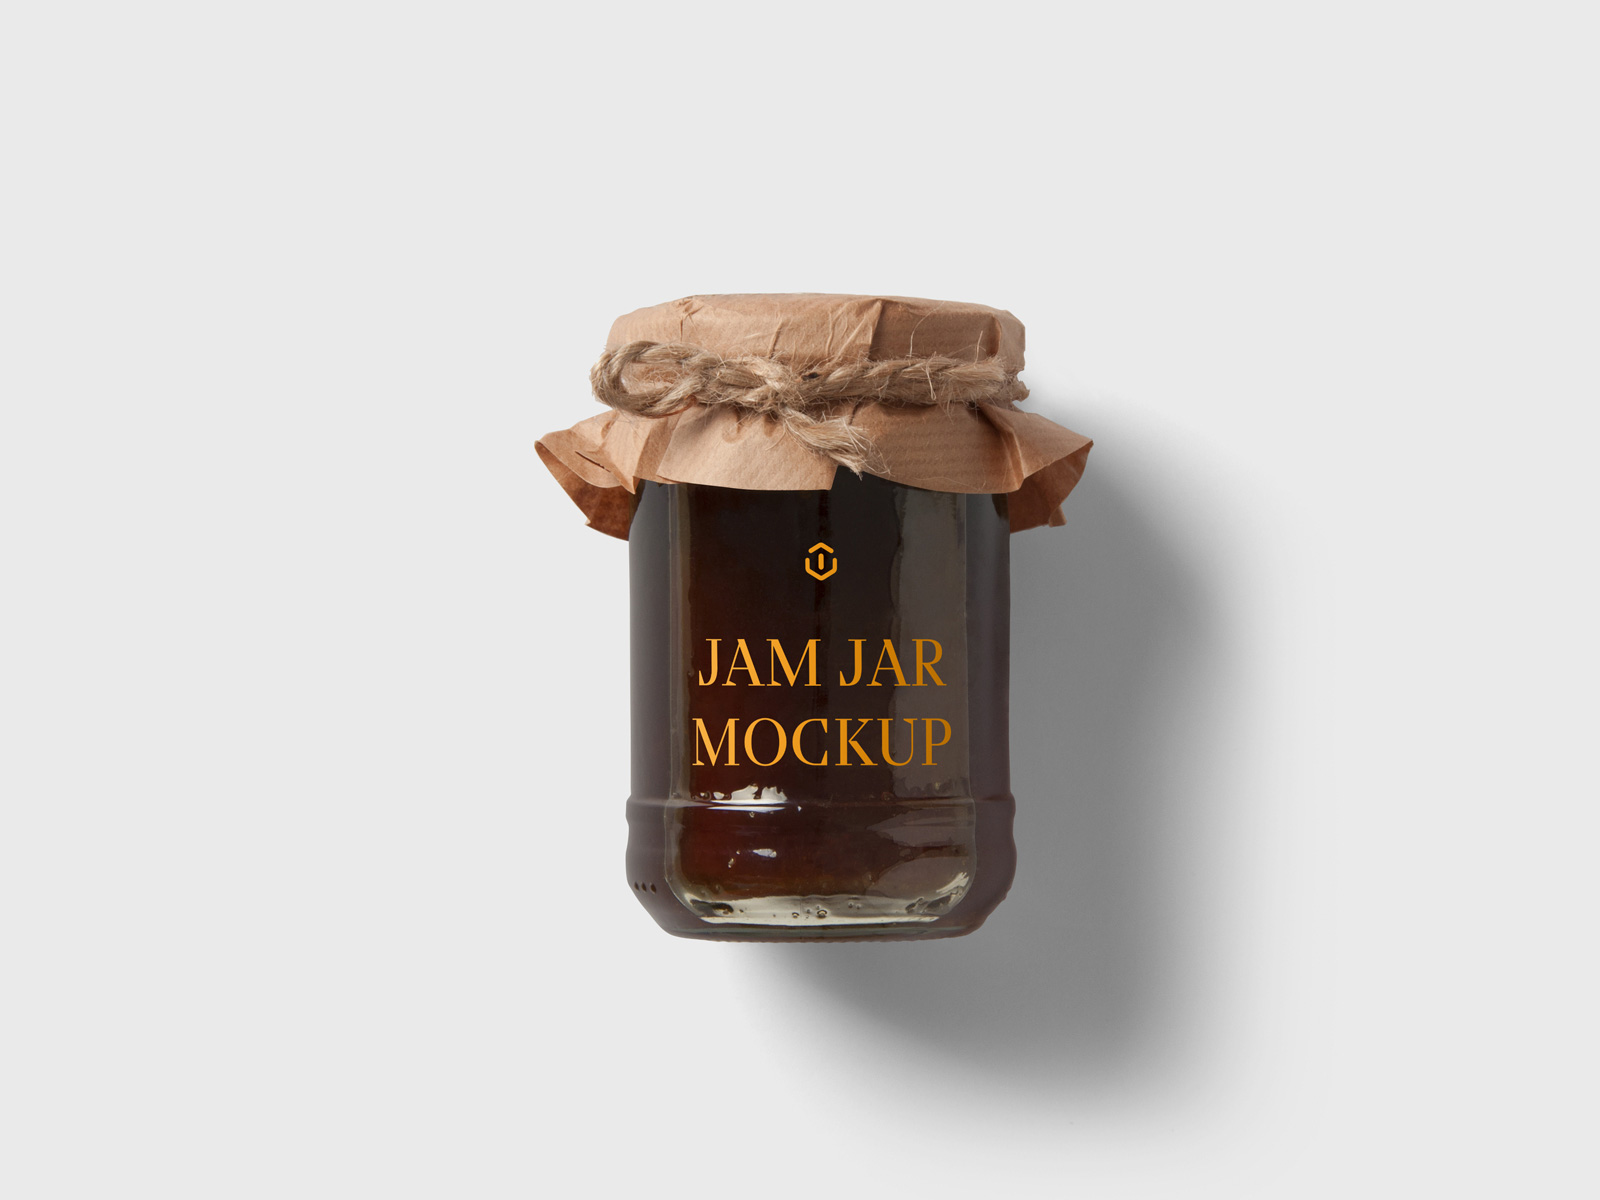 高质量果酱罐花生酱罐辣椒酱罐蜂蜜罐样机模型Jar Mockup .psd素材